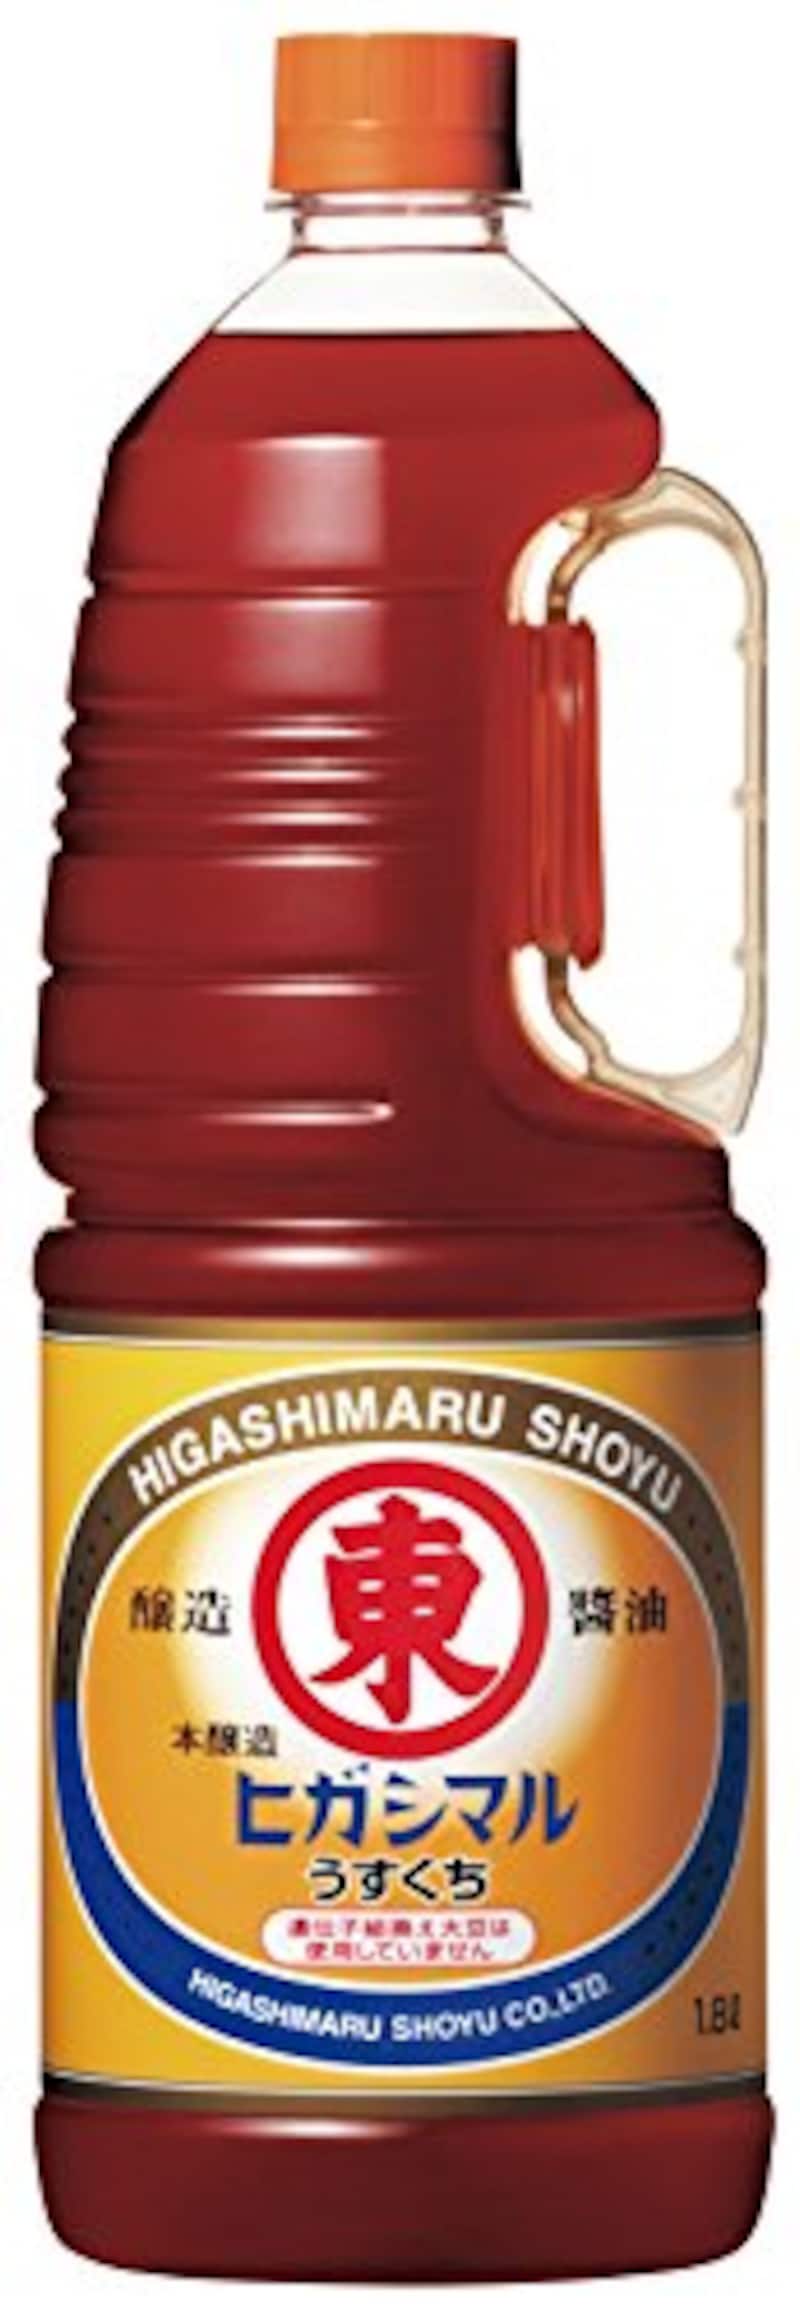 ヒガシマル醤油,うすくちしょうゆ 1.8L